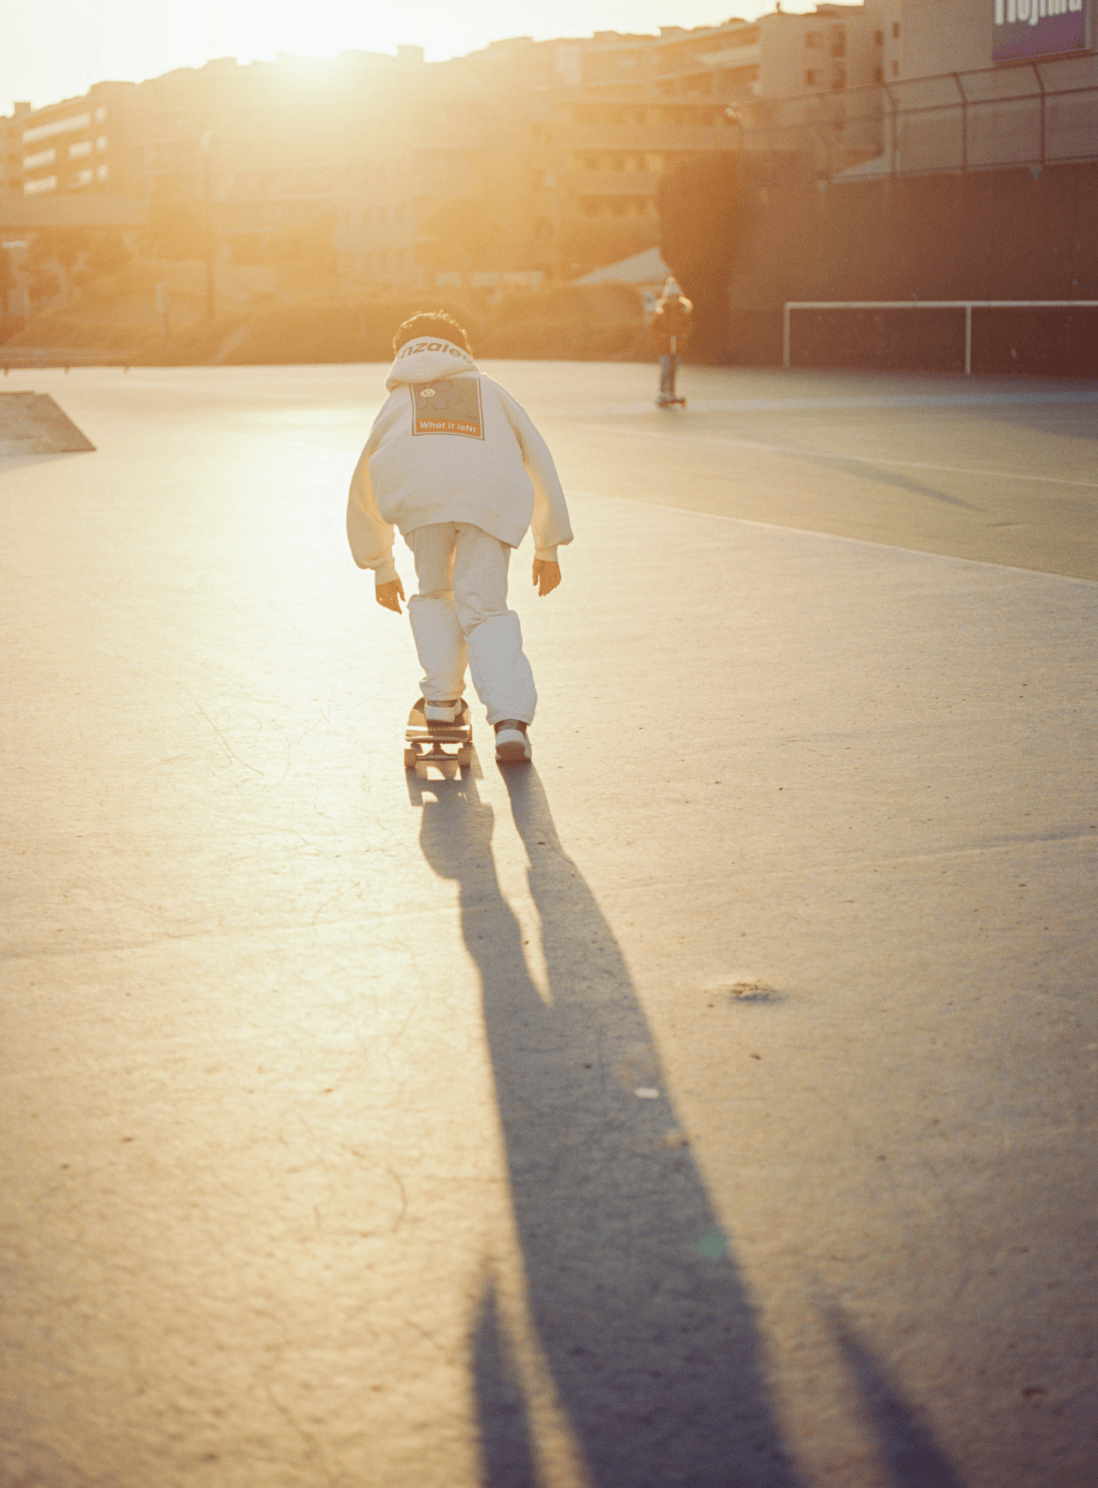 夕日が差し込む中スケートボードの練習をしている。